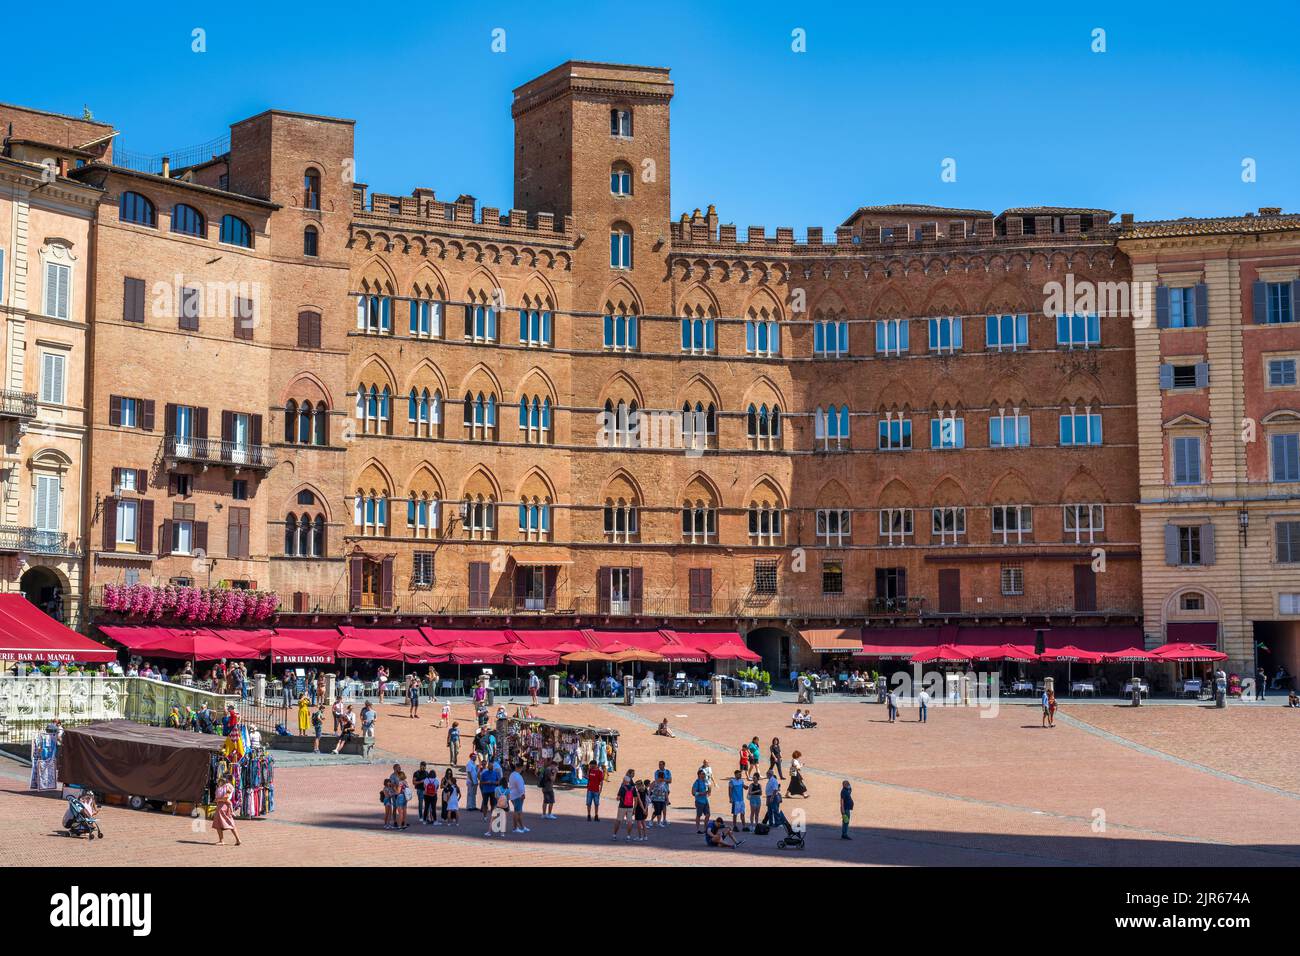 Vista general de la Piazza del Campo en Siena, Toscana, Italia Foto de stock